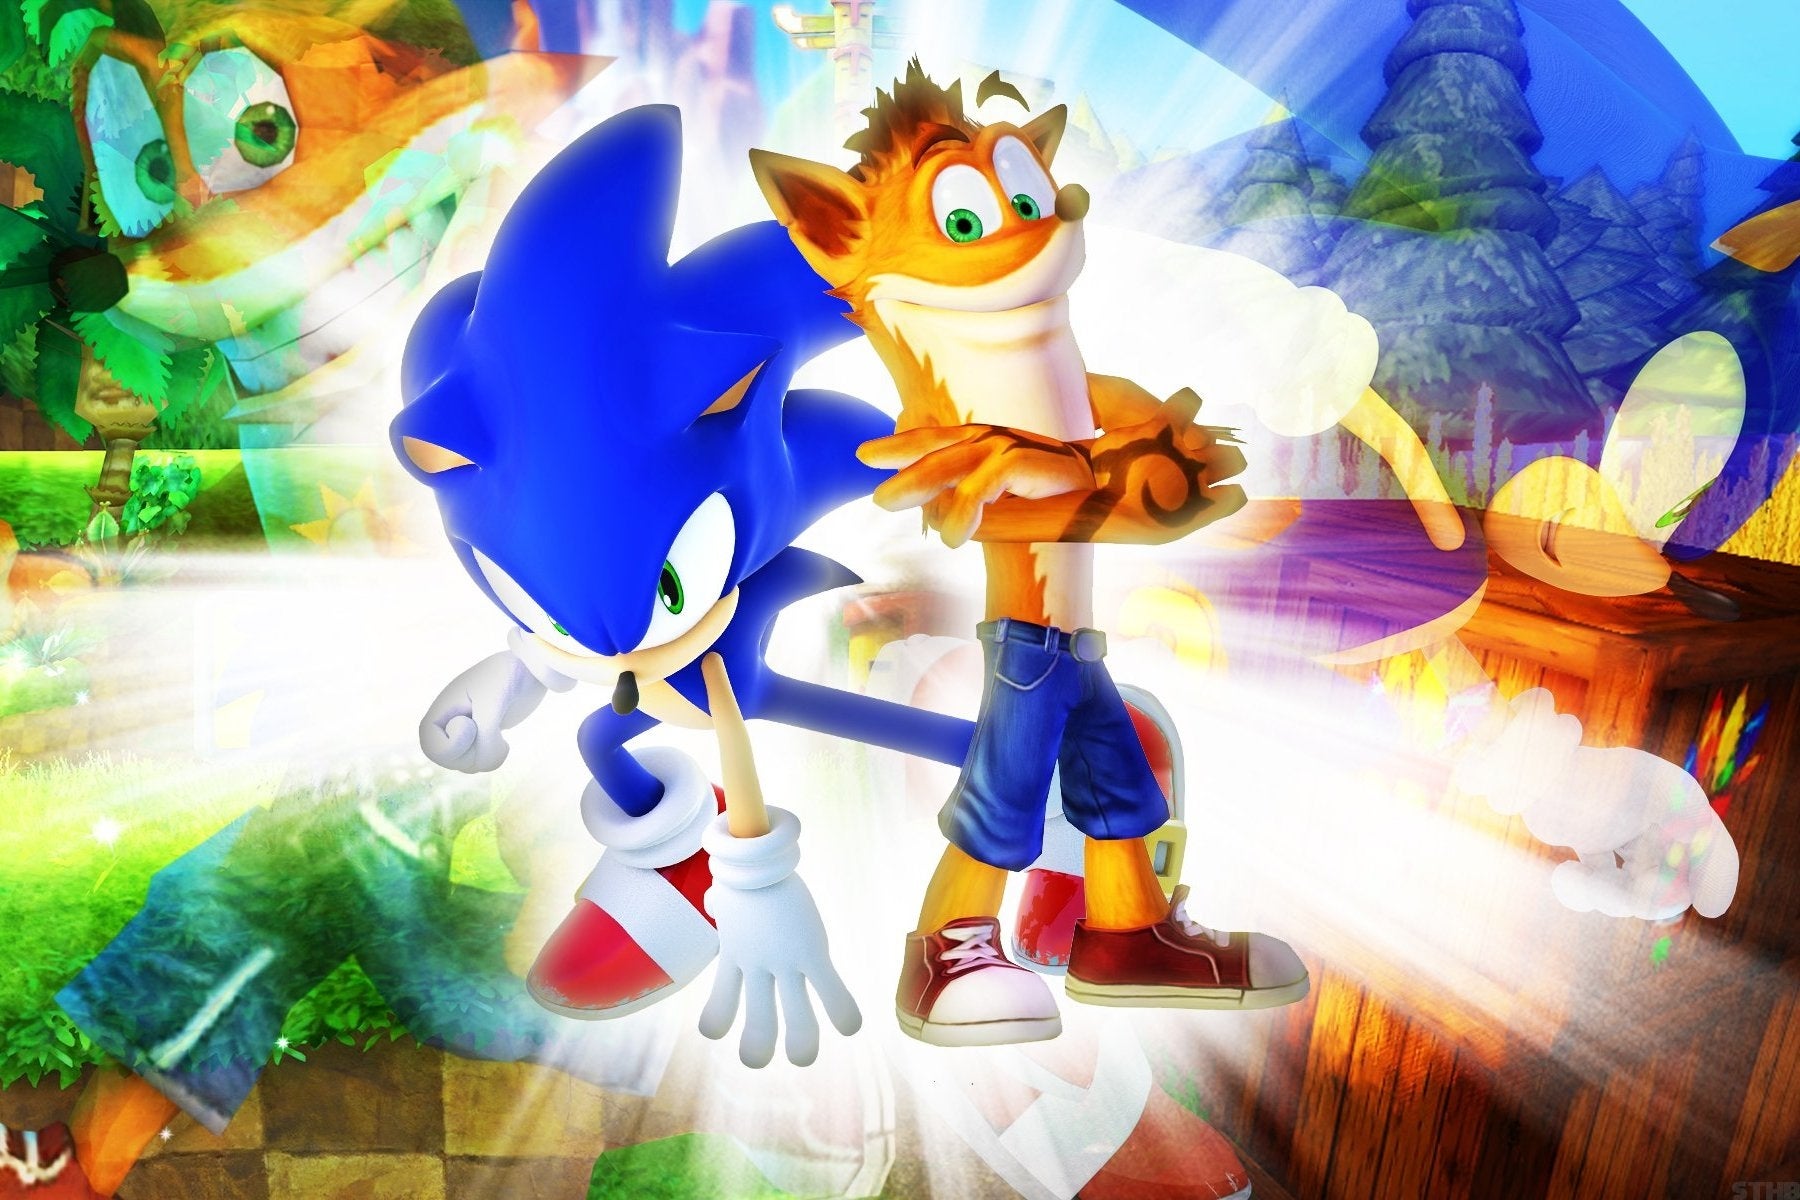 Immagine di SEGA: siete interessati a un crossover tra Sonic e Crash Bandicoot?